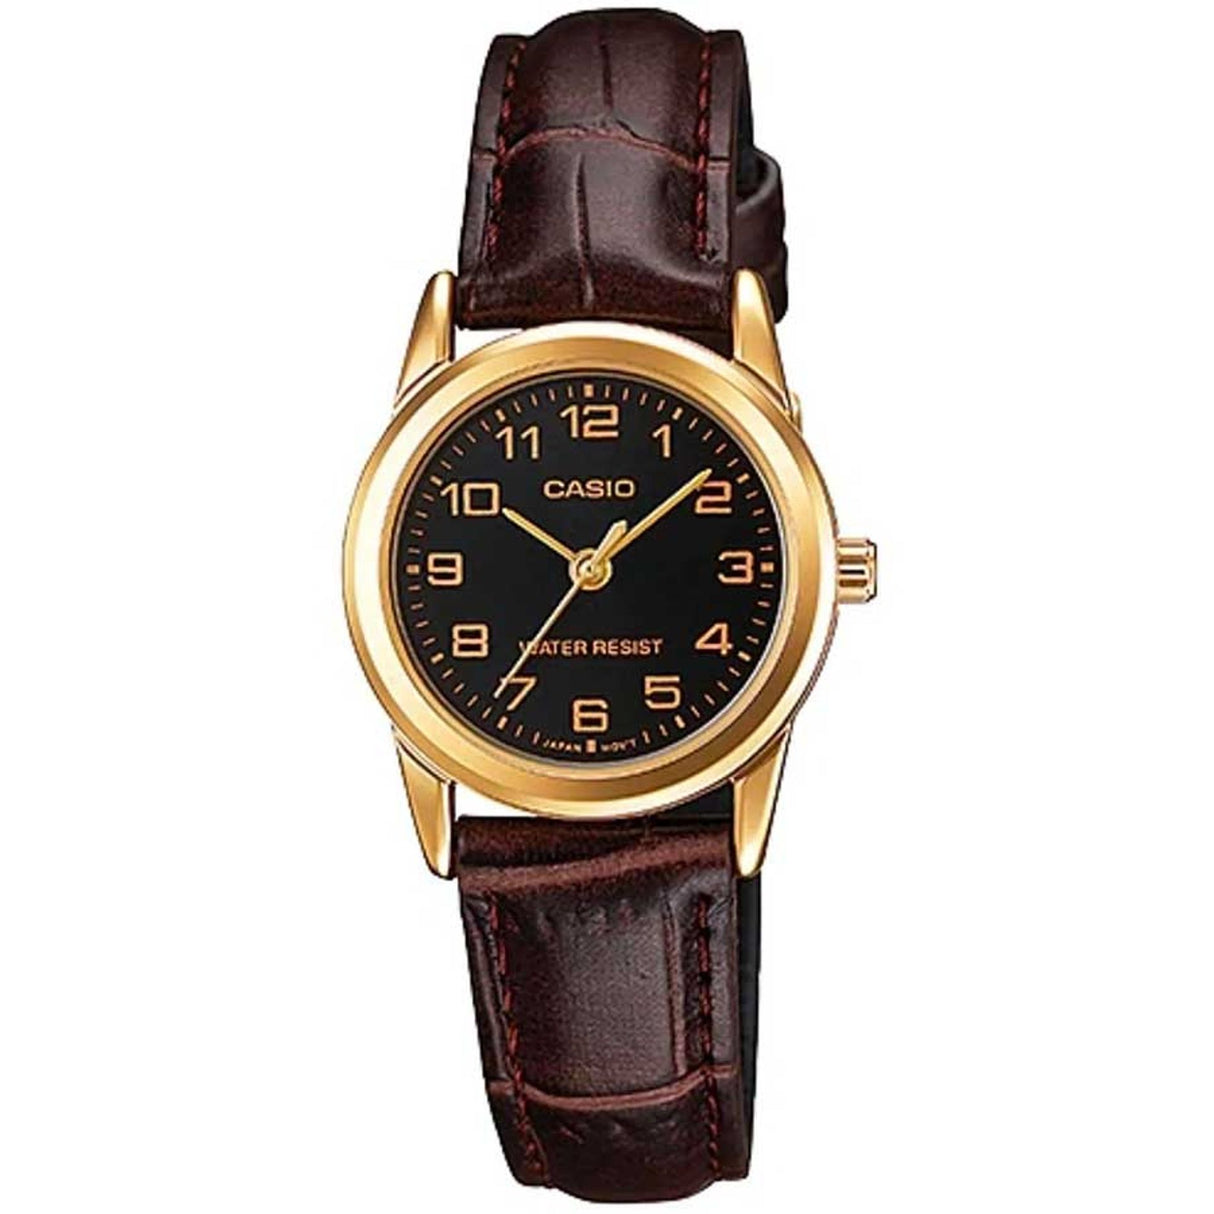 Women's watch Petite watch Classic watch Quartz watch Gift watch 3-hand watch Everyday watch Comfortable watch Compact watch Polished watch Organized watch